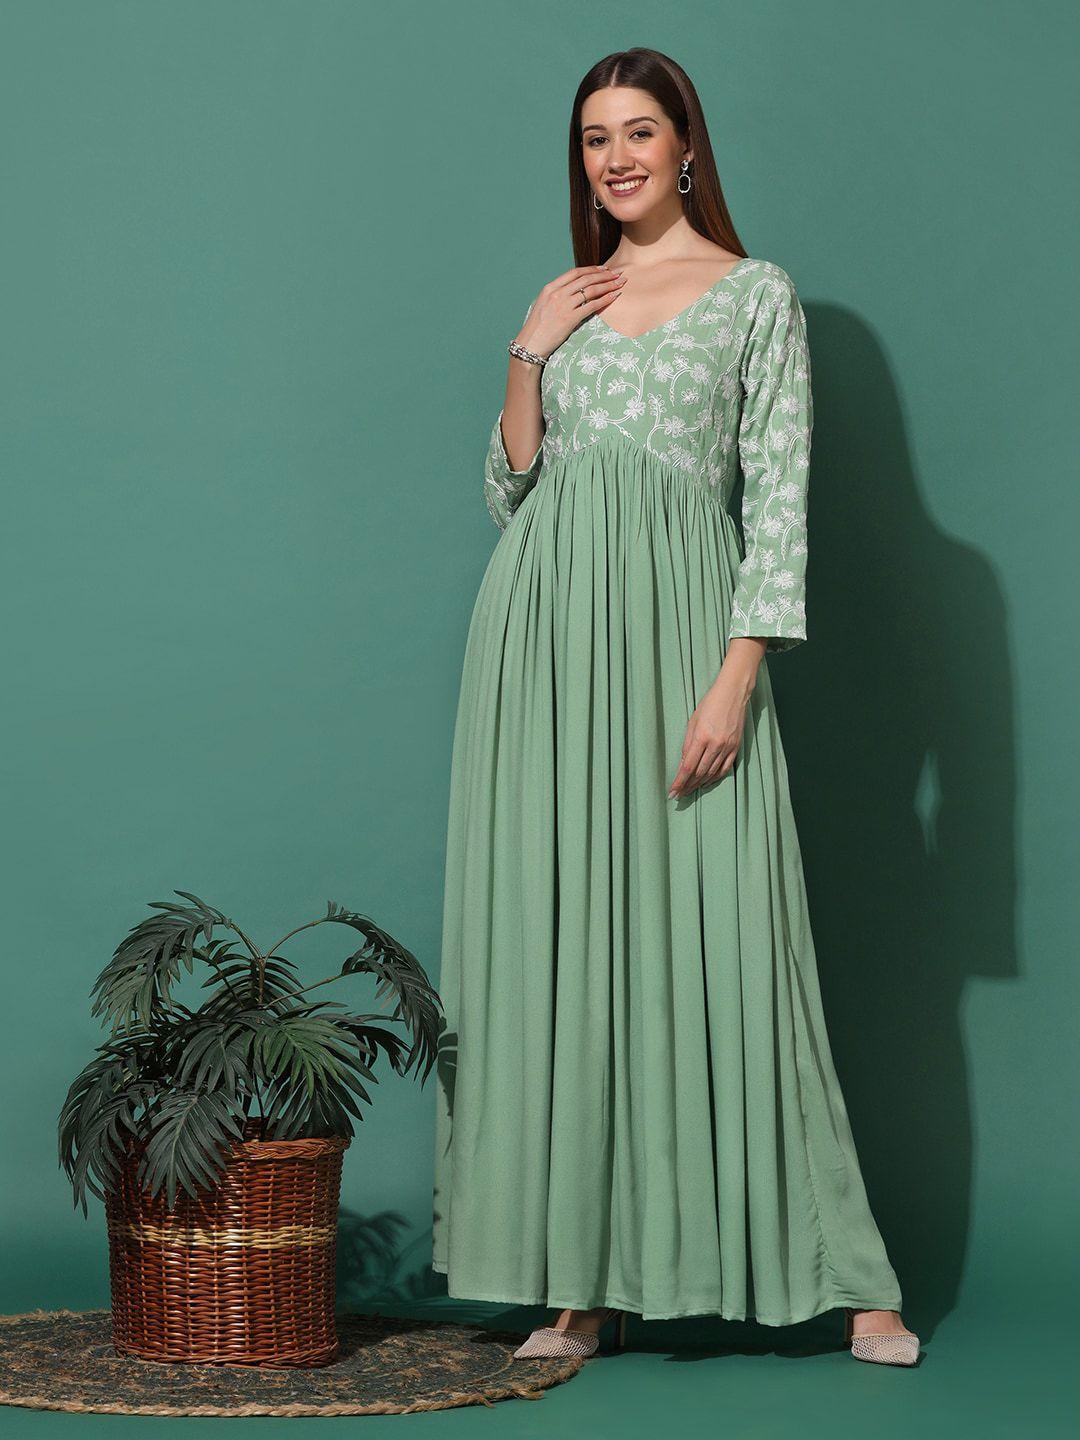 fashion dream green maxi dress